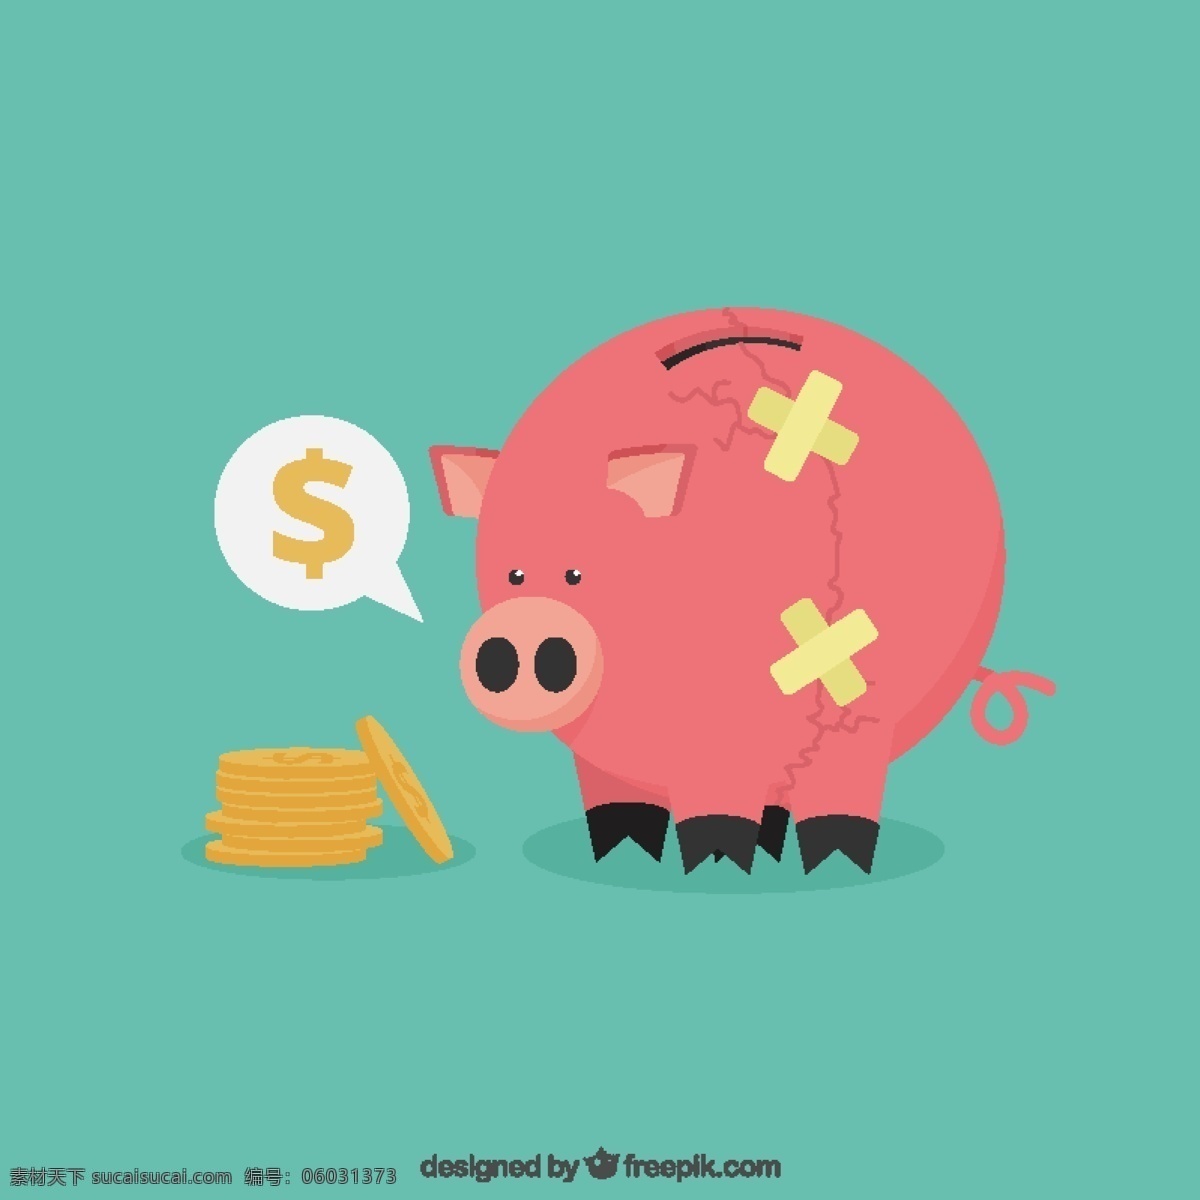 没有 钱 小 猪 存钱罐 背景 金钱 世界 金融 银行 硬币 美元 付款 现金 储蓄罐 货币 国际 外汇 富人 钞票 好的 小猪